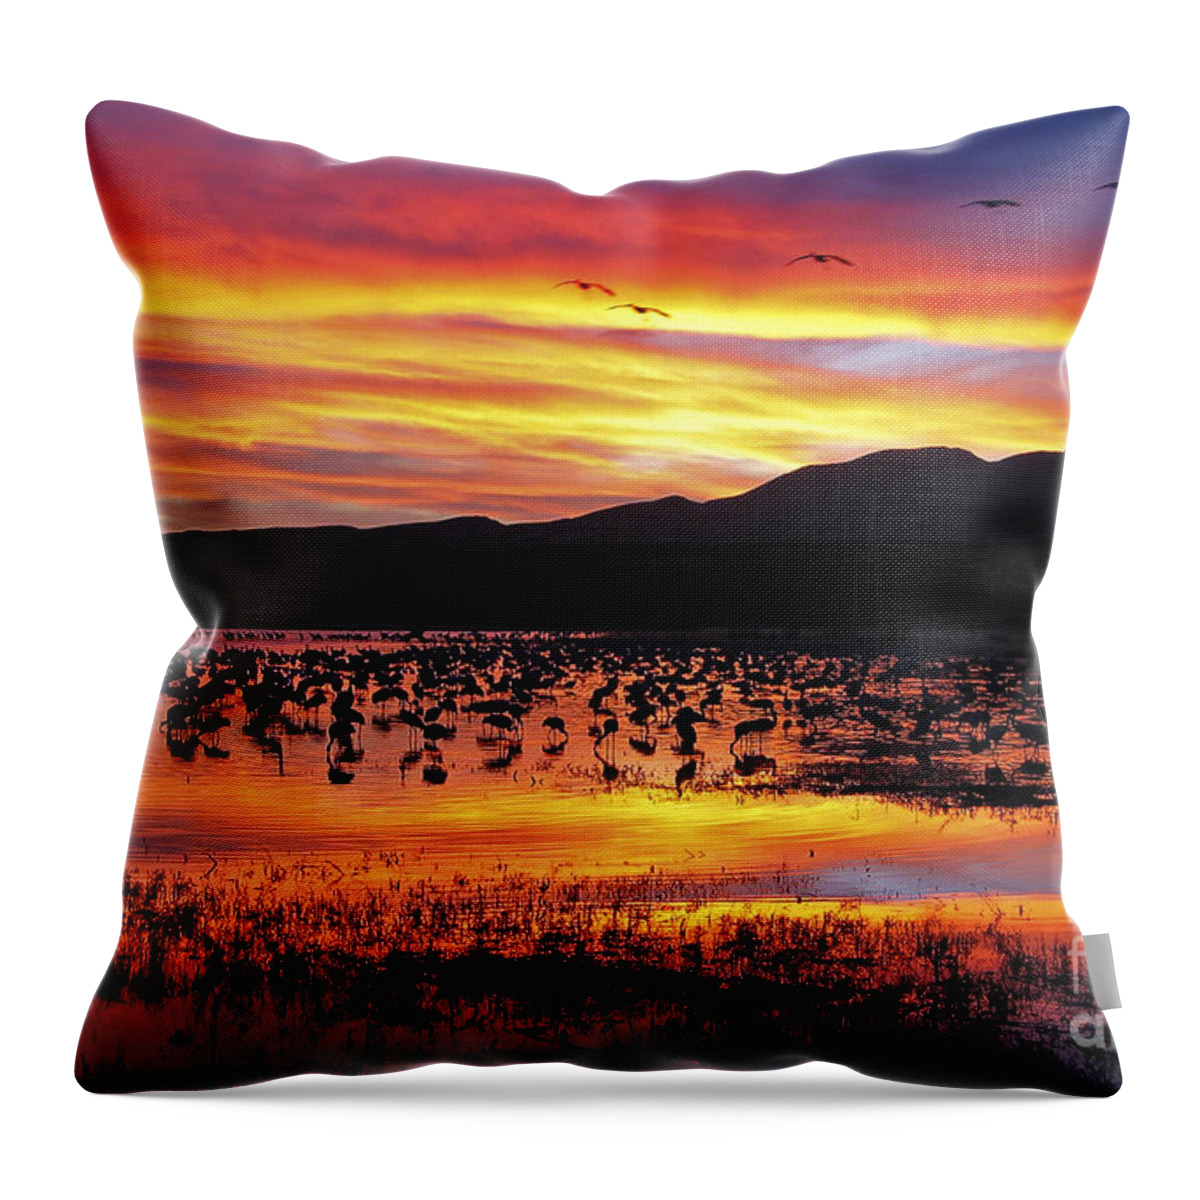 Ralser Throw Pillow featuring the photograph Bosque sunset II by Steven Ralser